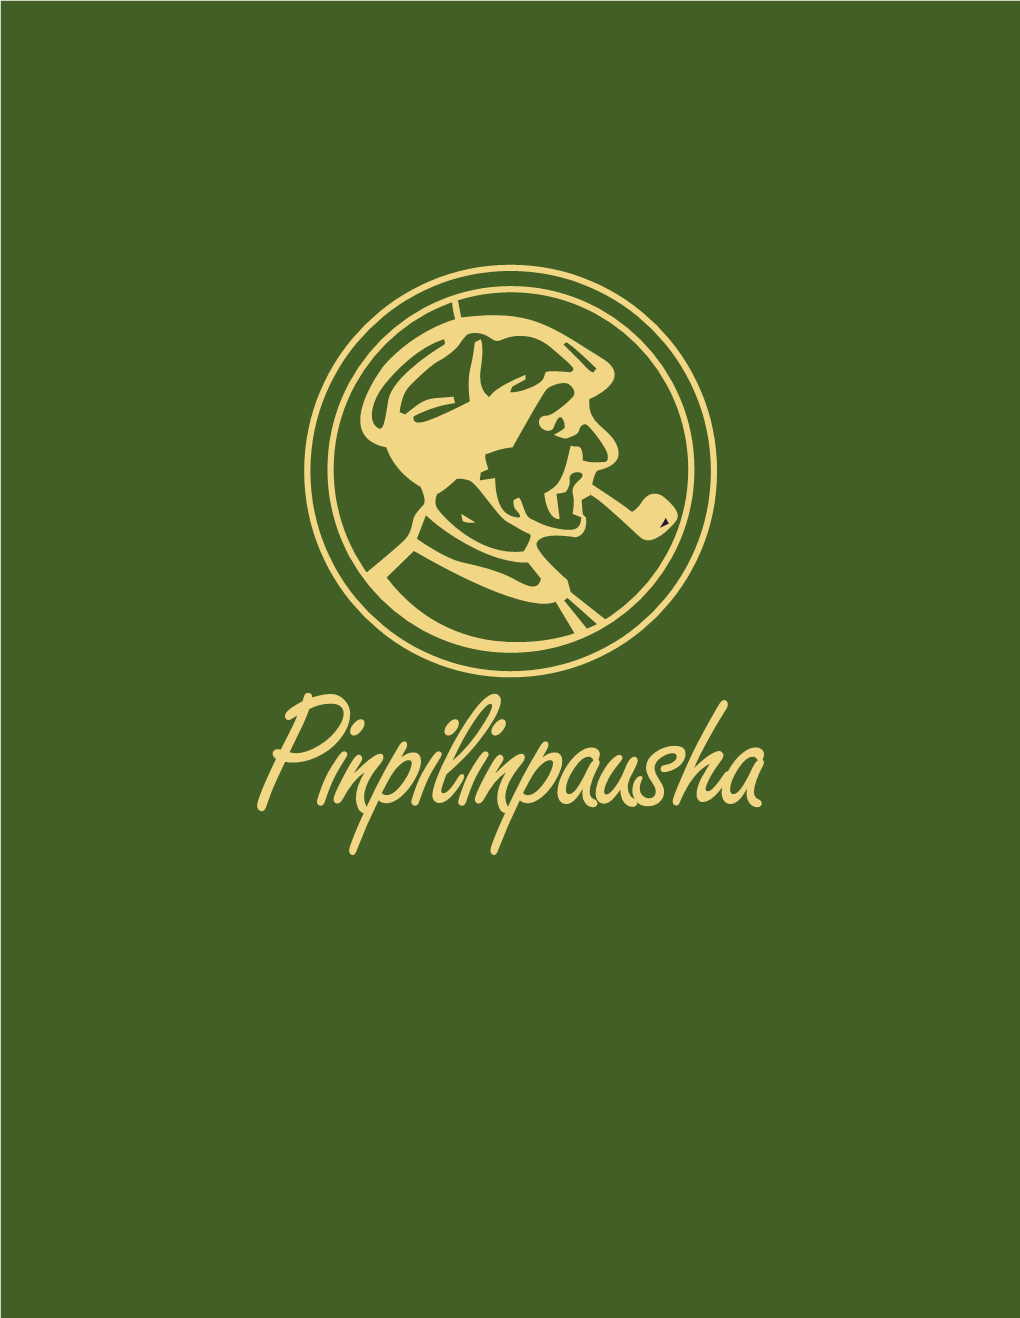 Original Pinpilinpausha Nov 2019 9 Baja